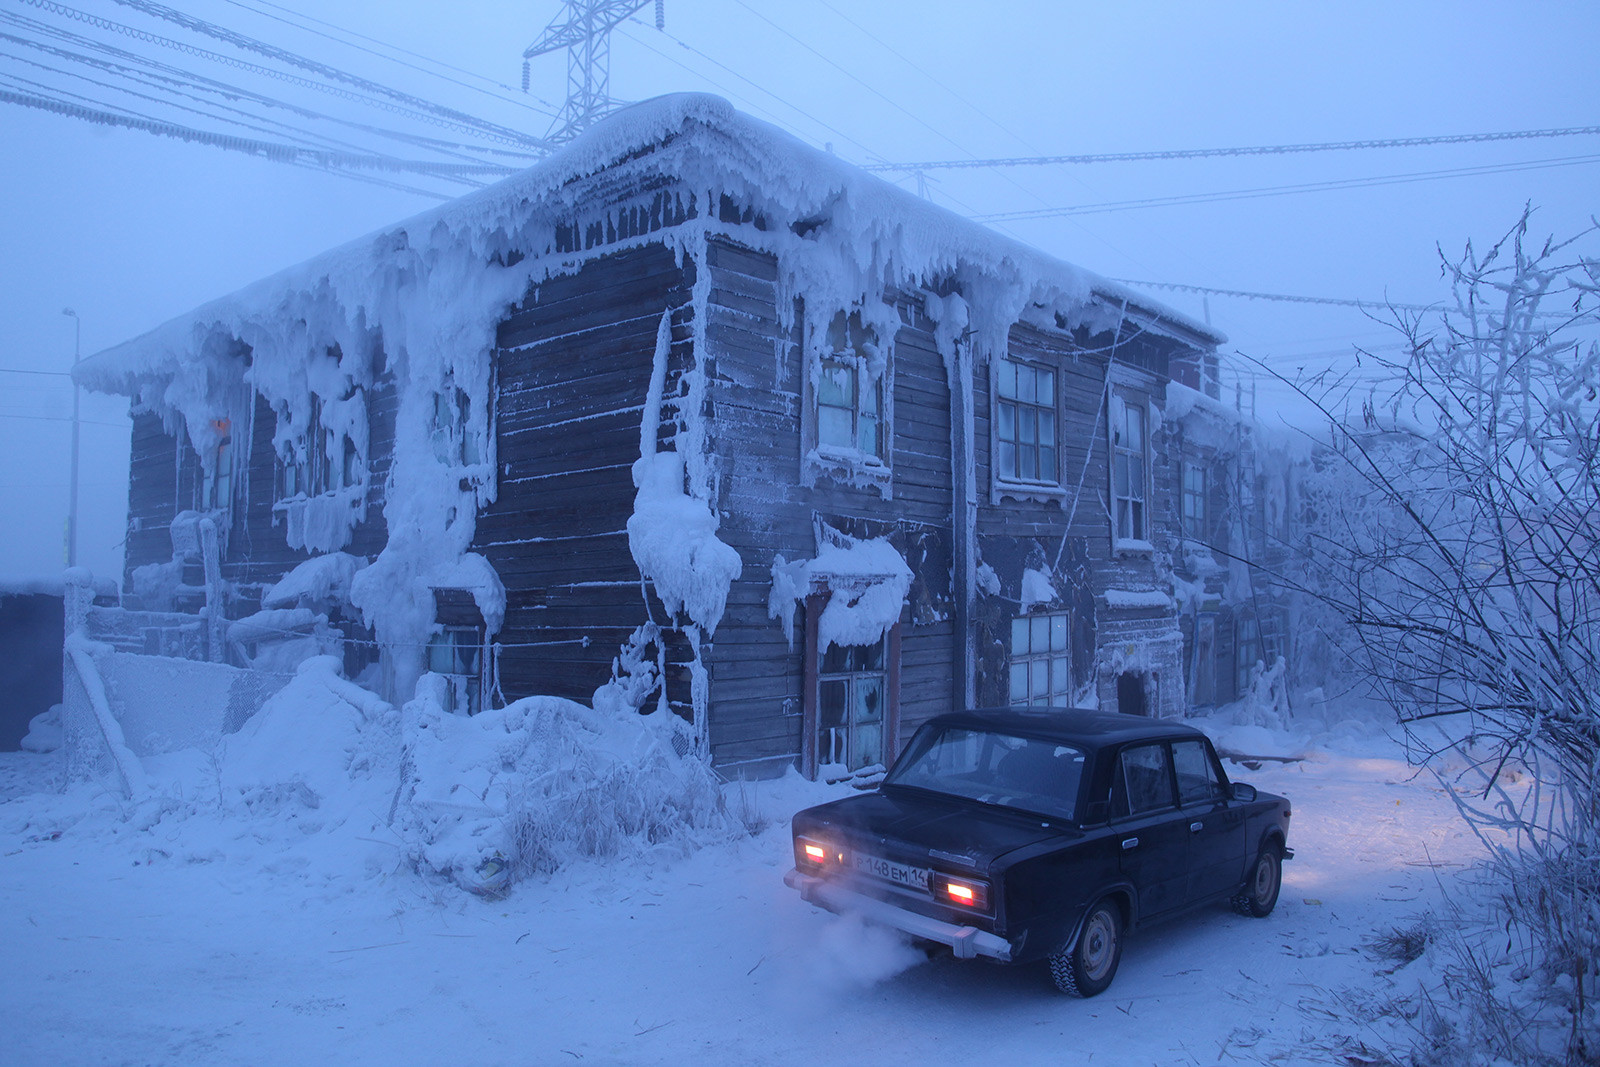 Руски автомобил със запален двигател пред заснежена сграда, покрита с лед, в най-студения град на света. Автомобилите в Якутск трябва да бъдат оставяни в топли гаражи или двигателят трябва да работи непрекъснато, в противен случай бензинът ще замръзне